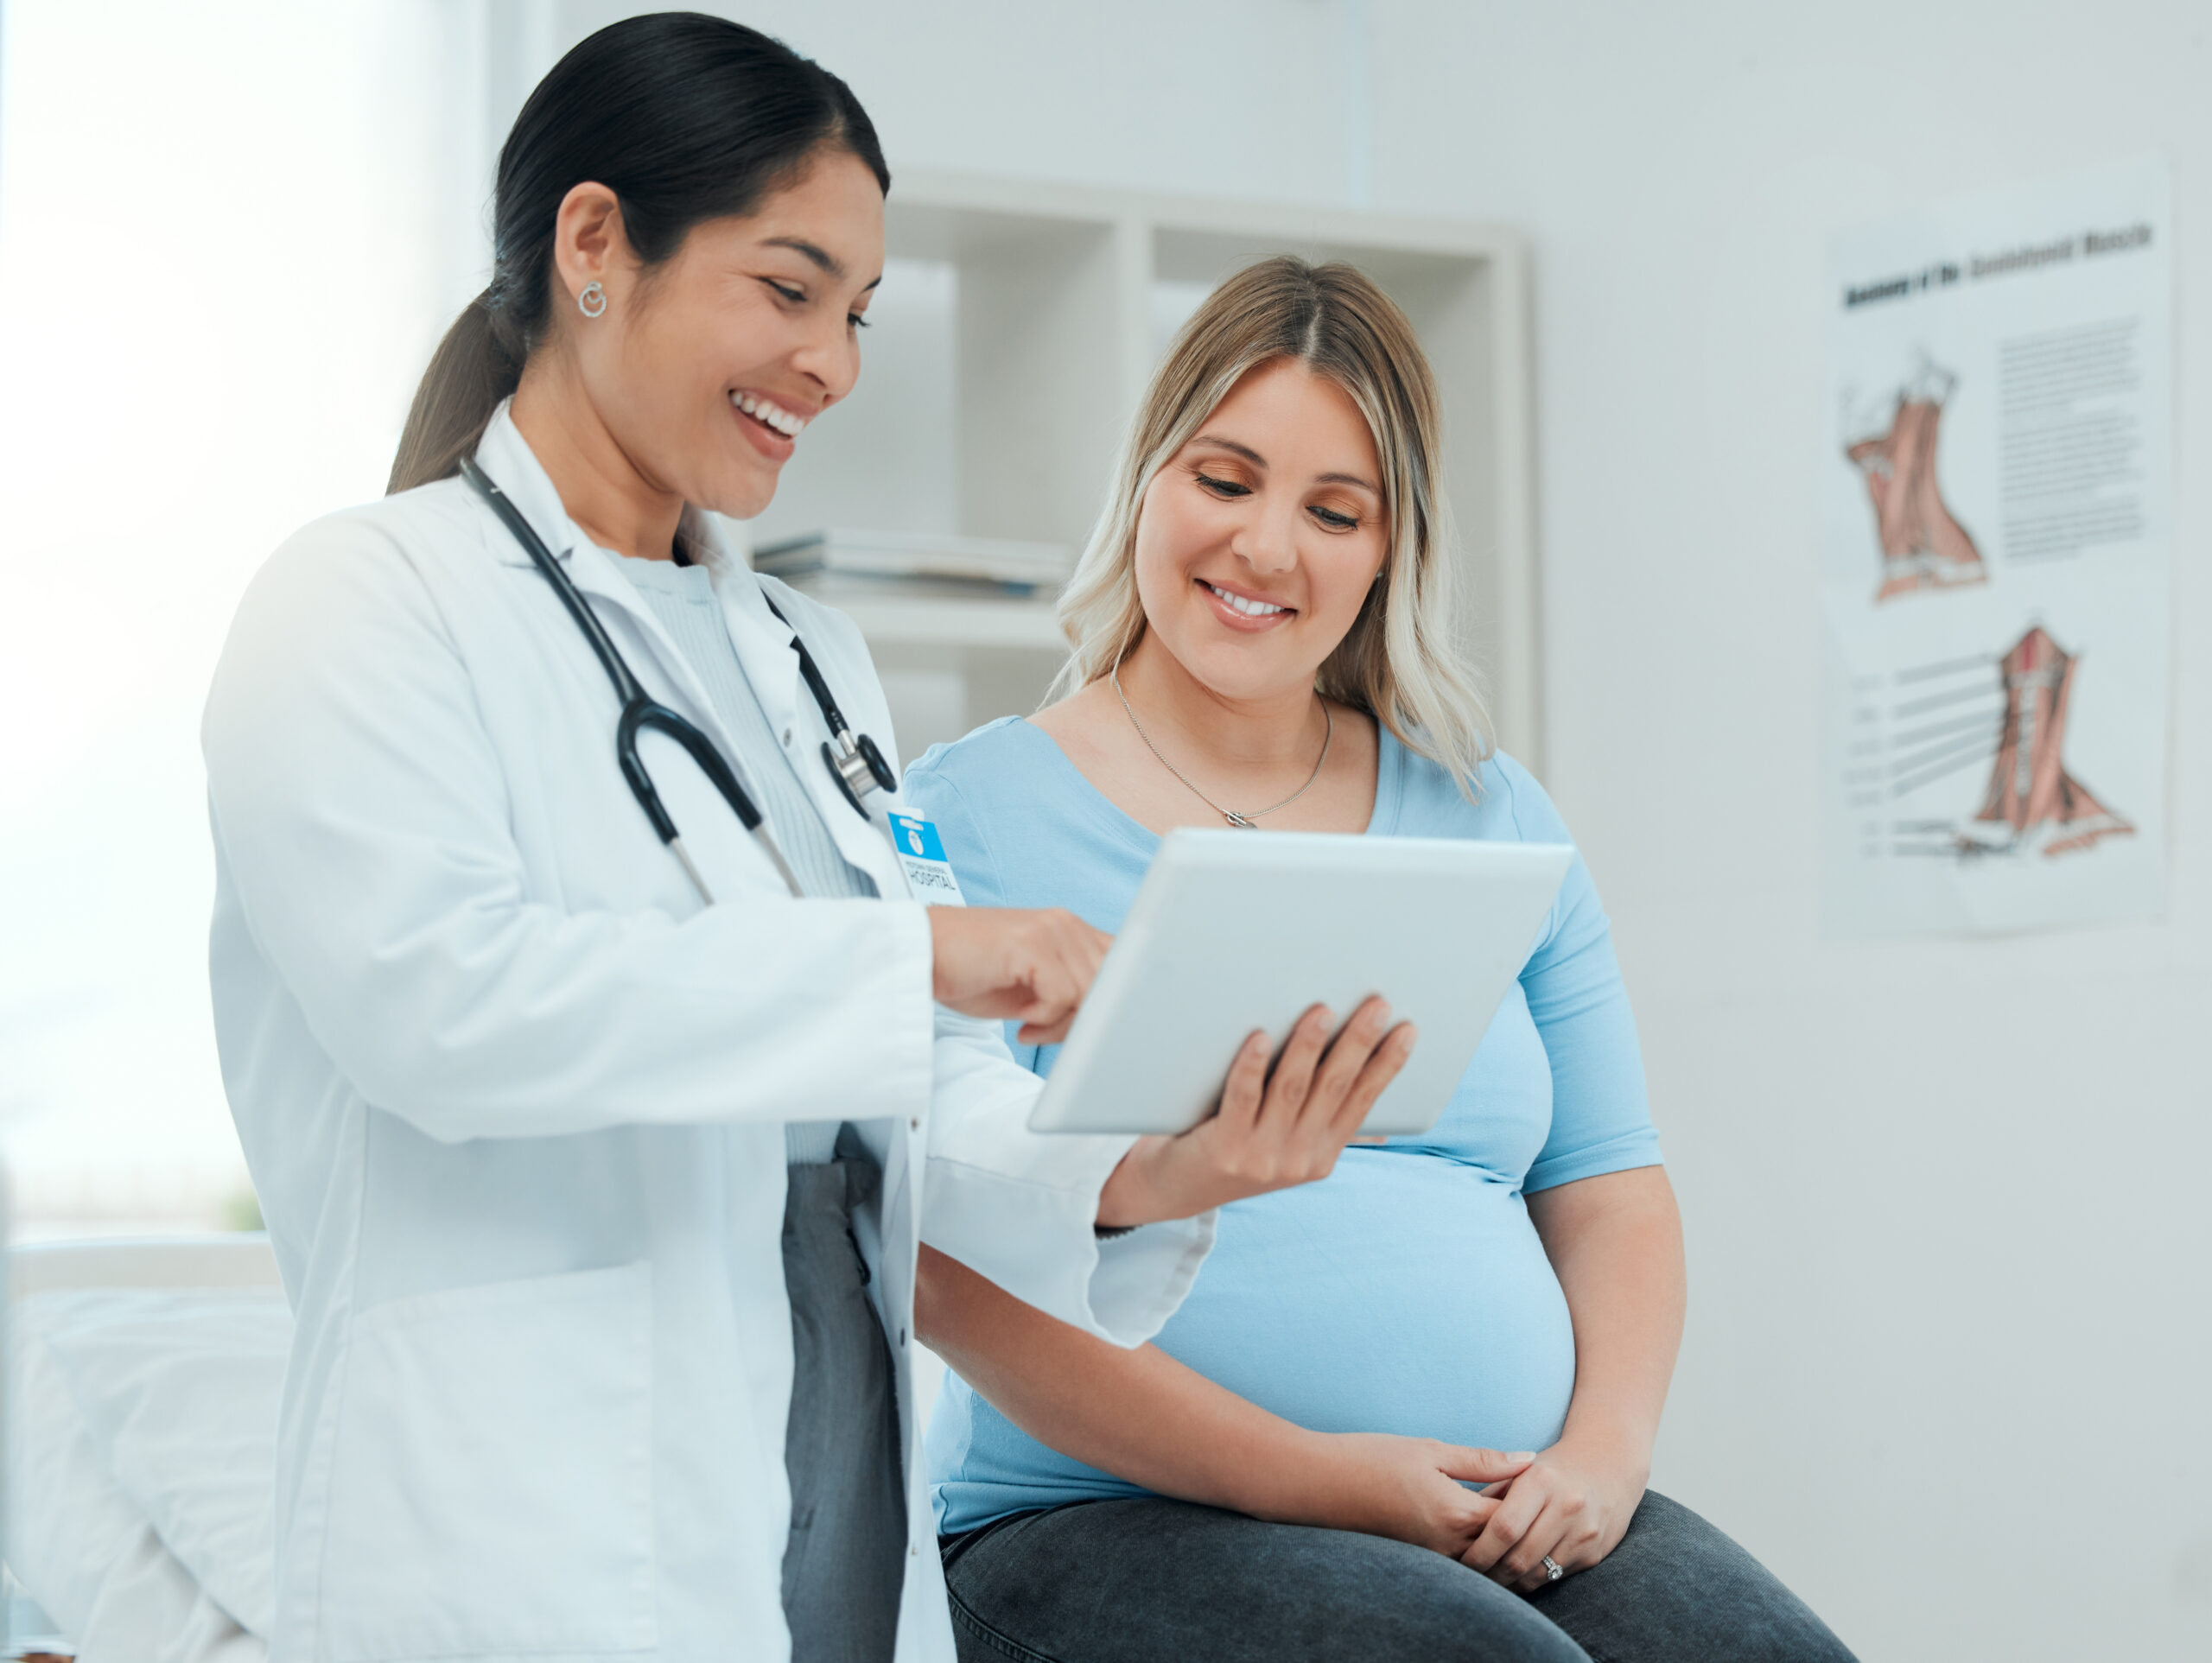 醫生向懷孕患者展示觸控板。